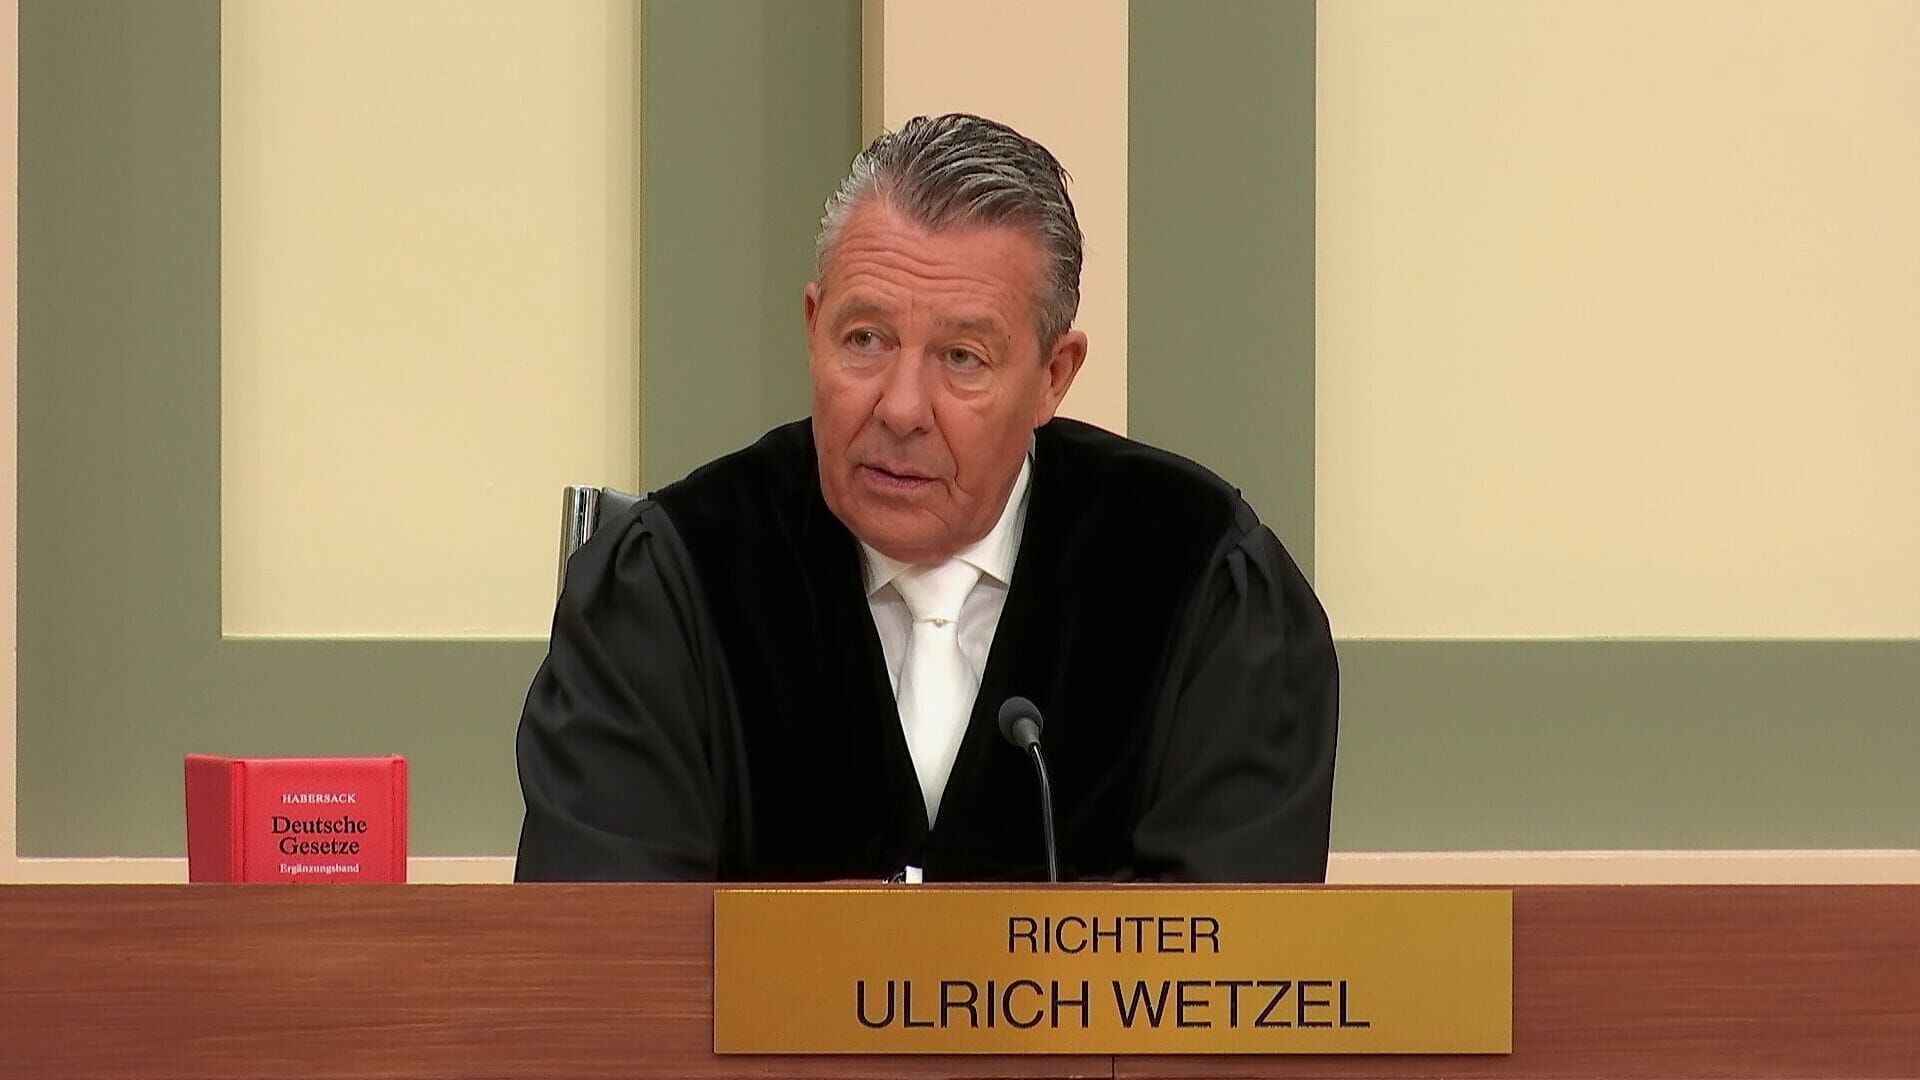 Ulrich Wetzel – Das Strafgericht